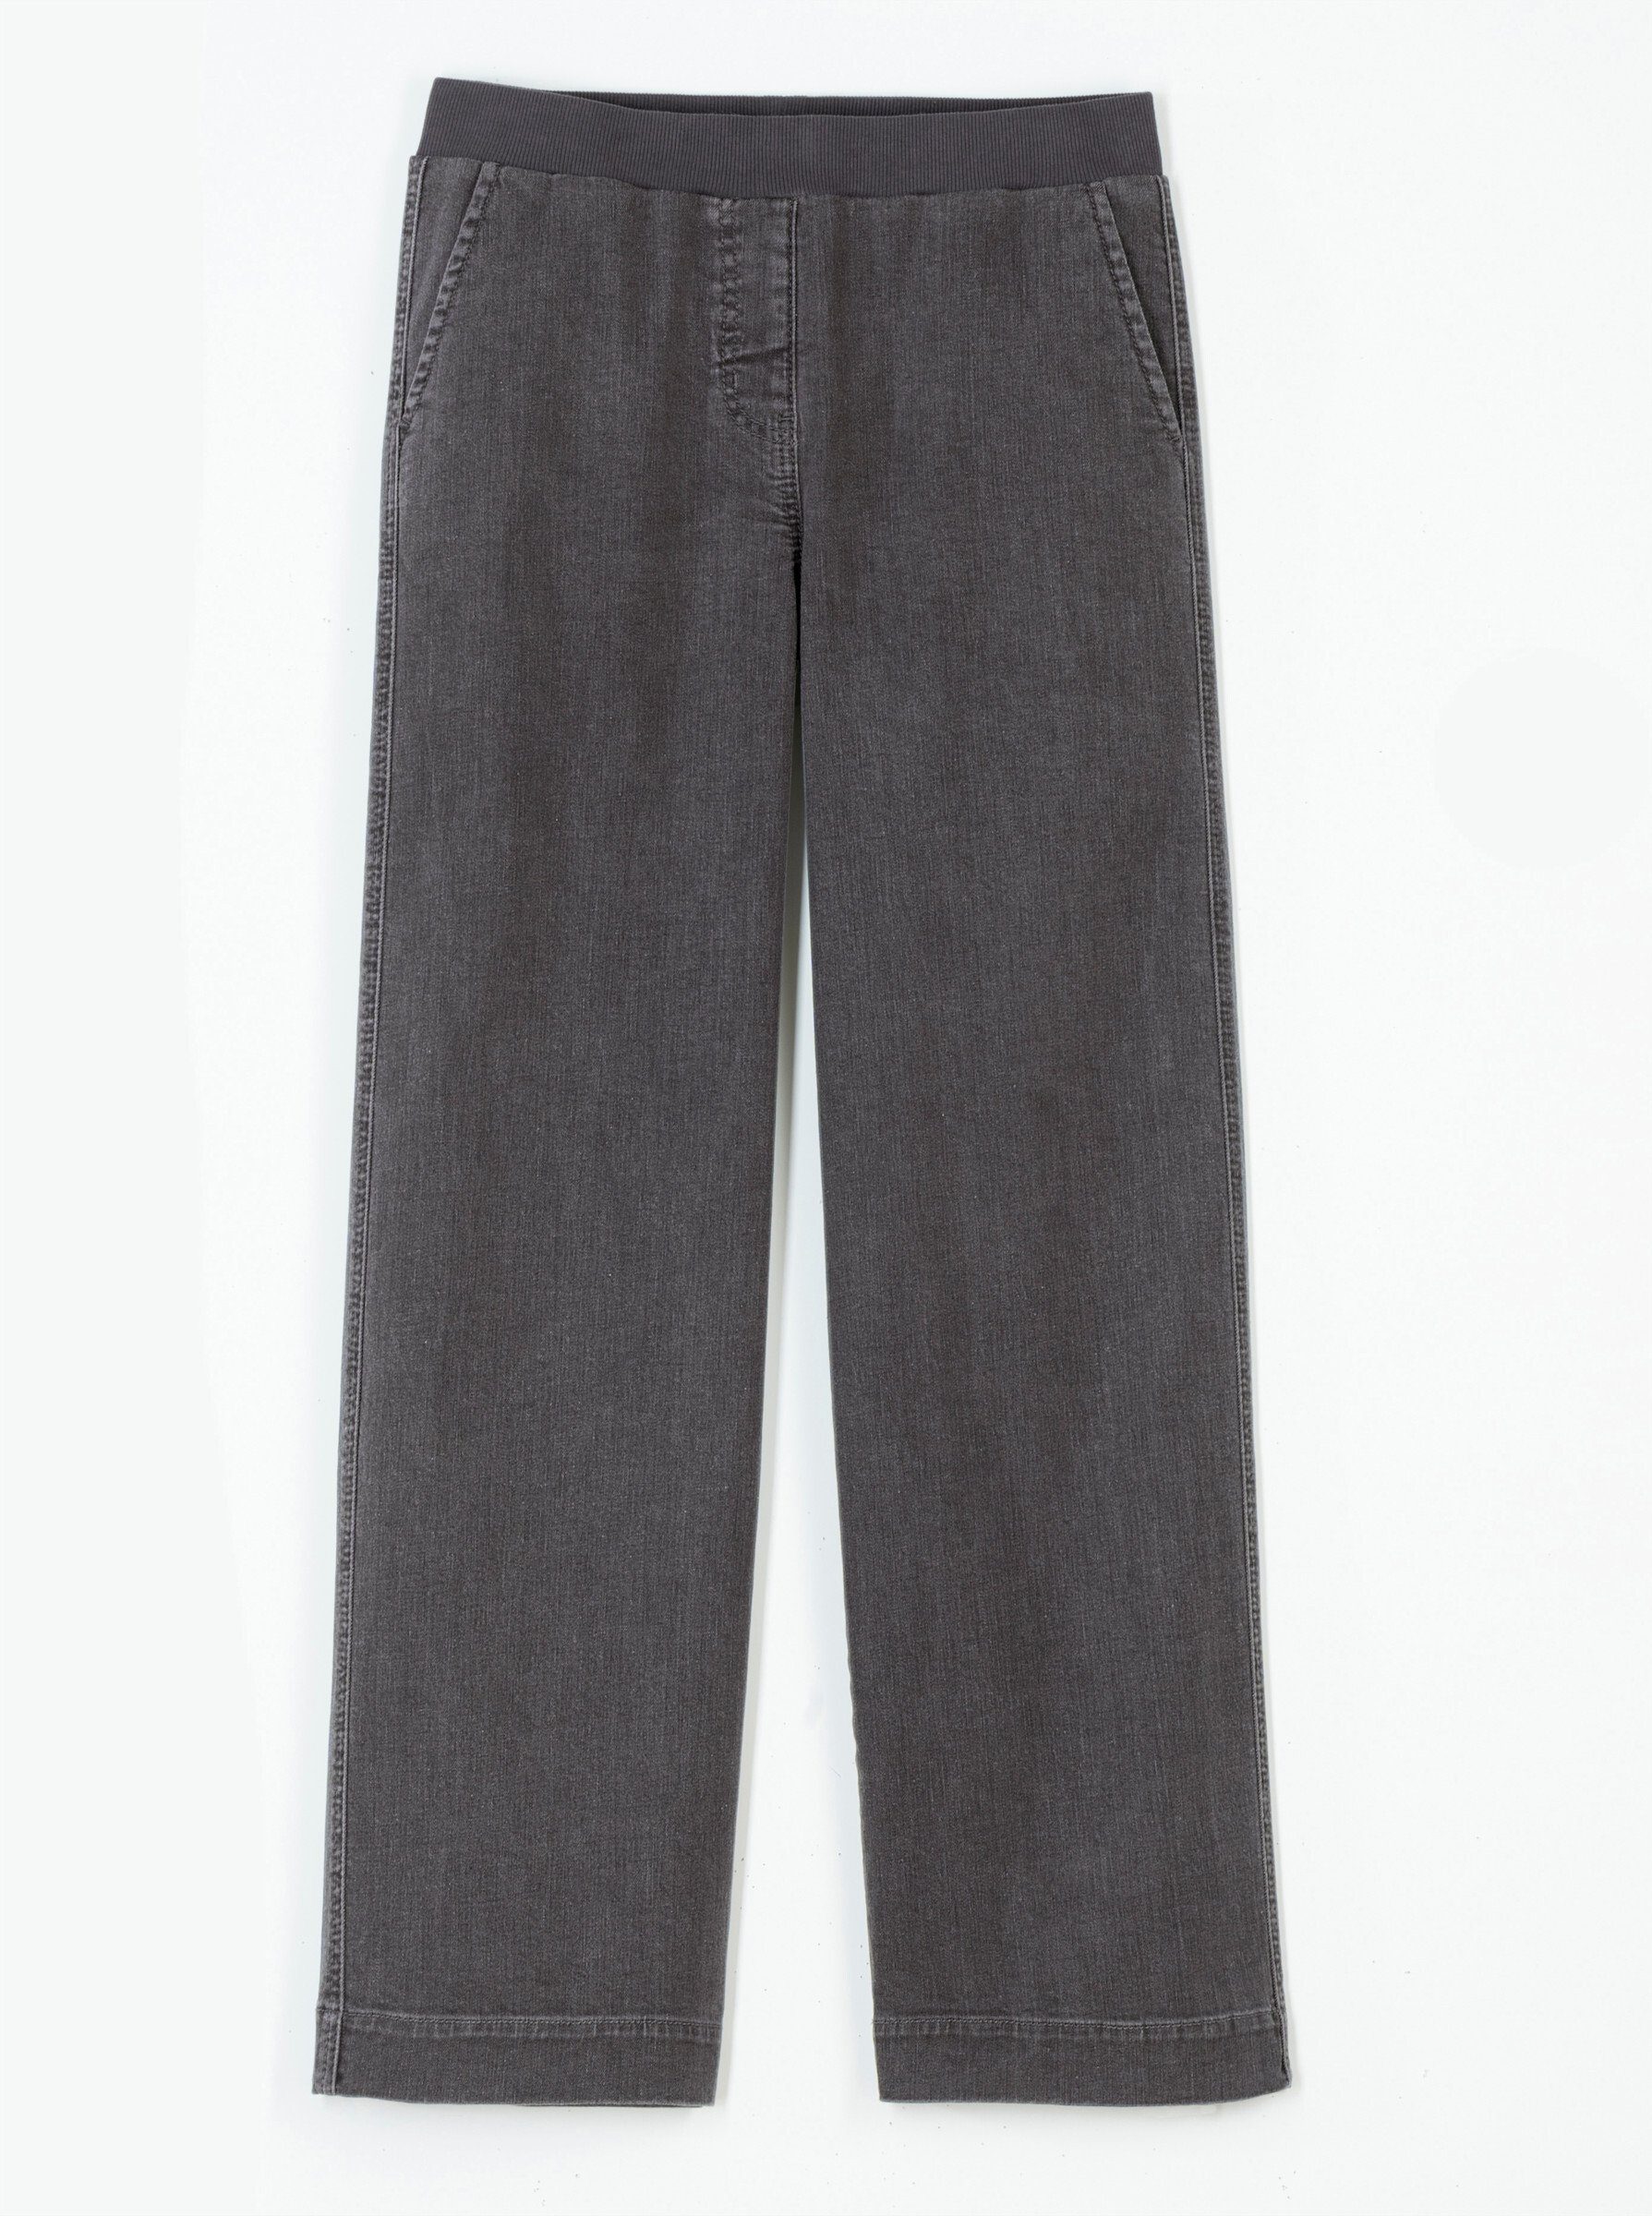 WITT WEIDEN grey-denim Jeans Bequeme